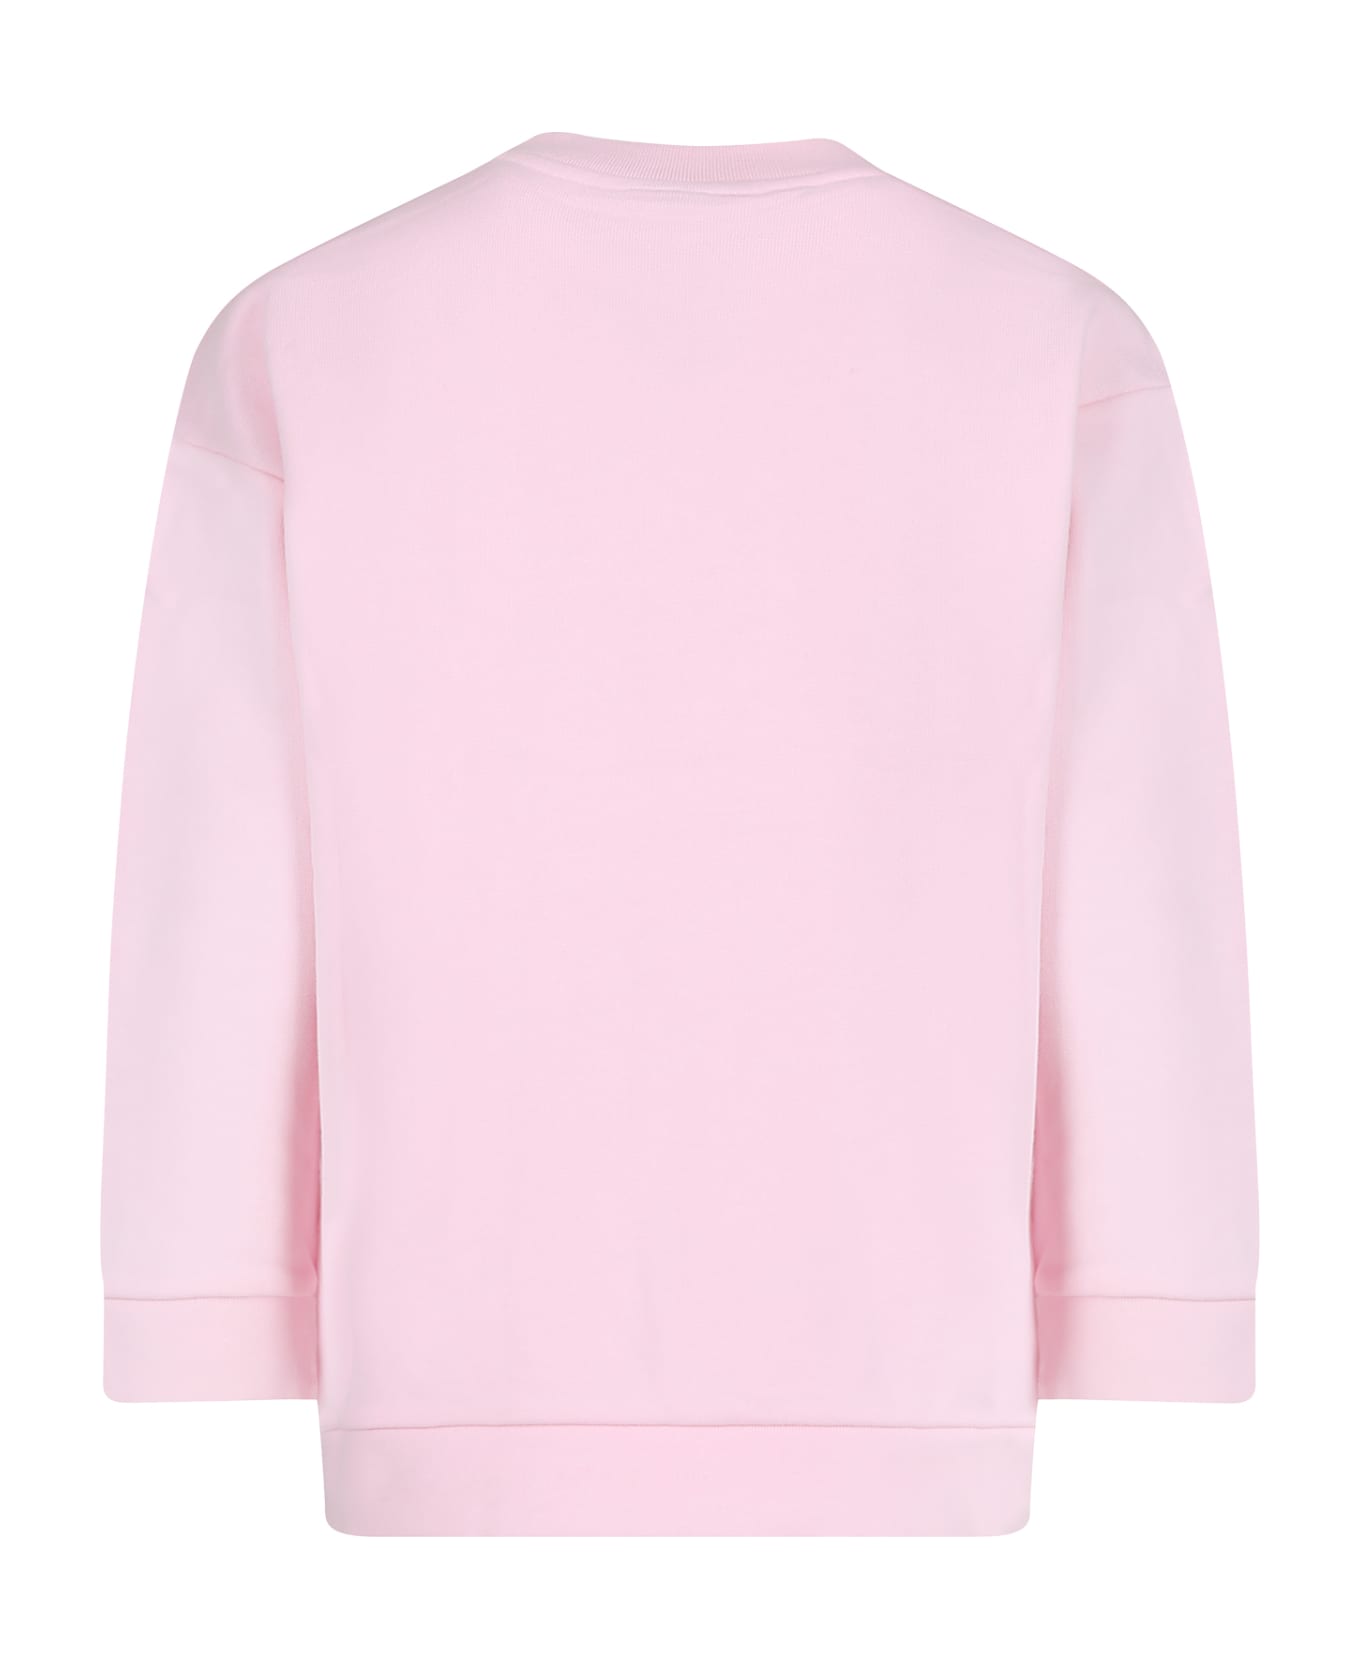 Fendi Pink Sweatshirt For Girl With Fendi Logo - Pink